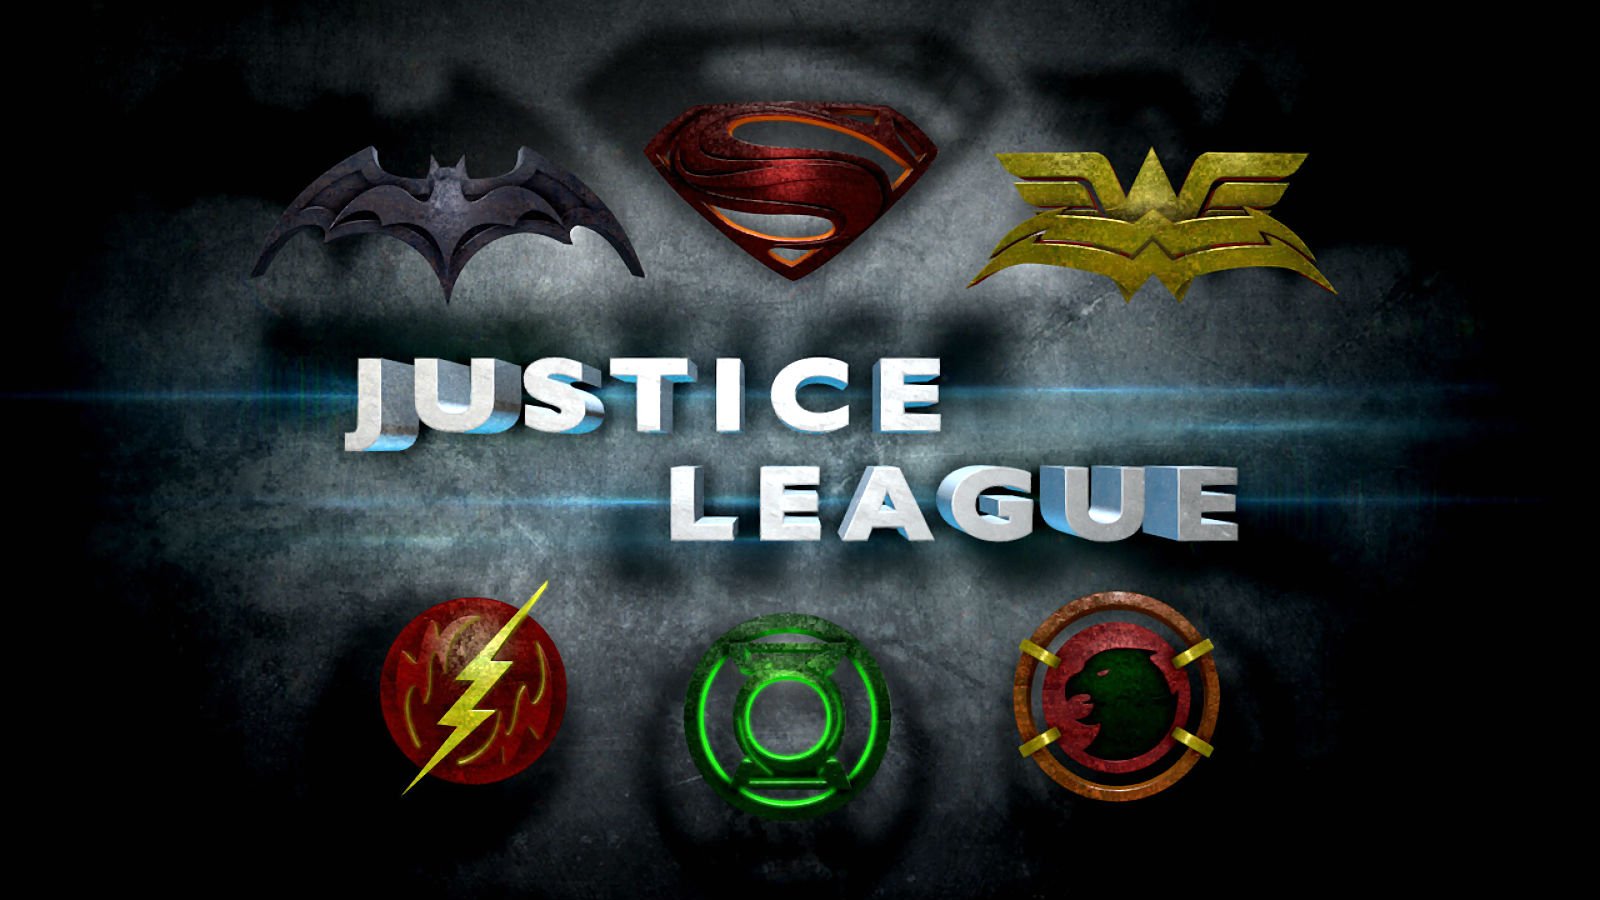 justice, League, Mortal, Superhero, Dc comics, Comics, D c, Warrior, Fantasy, Sci fi, Action, Fighting, 1jlm, Poster Wallpaper